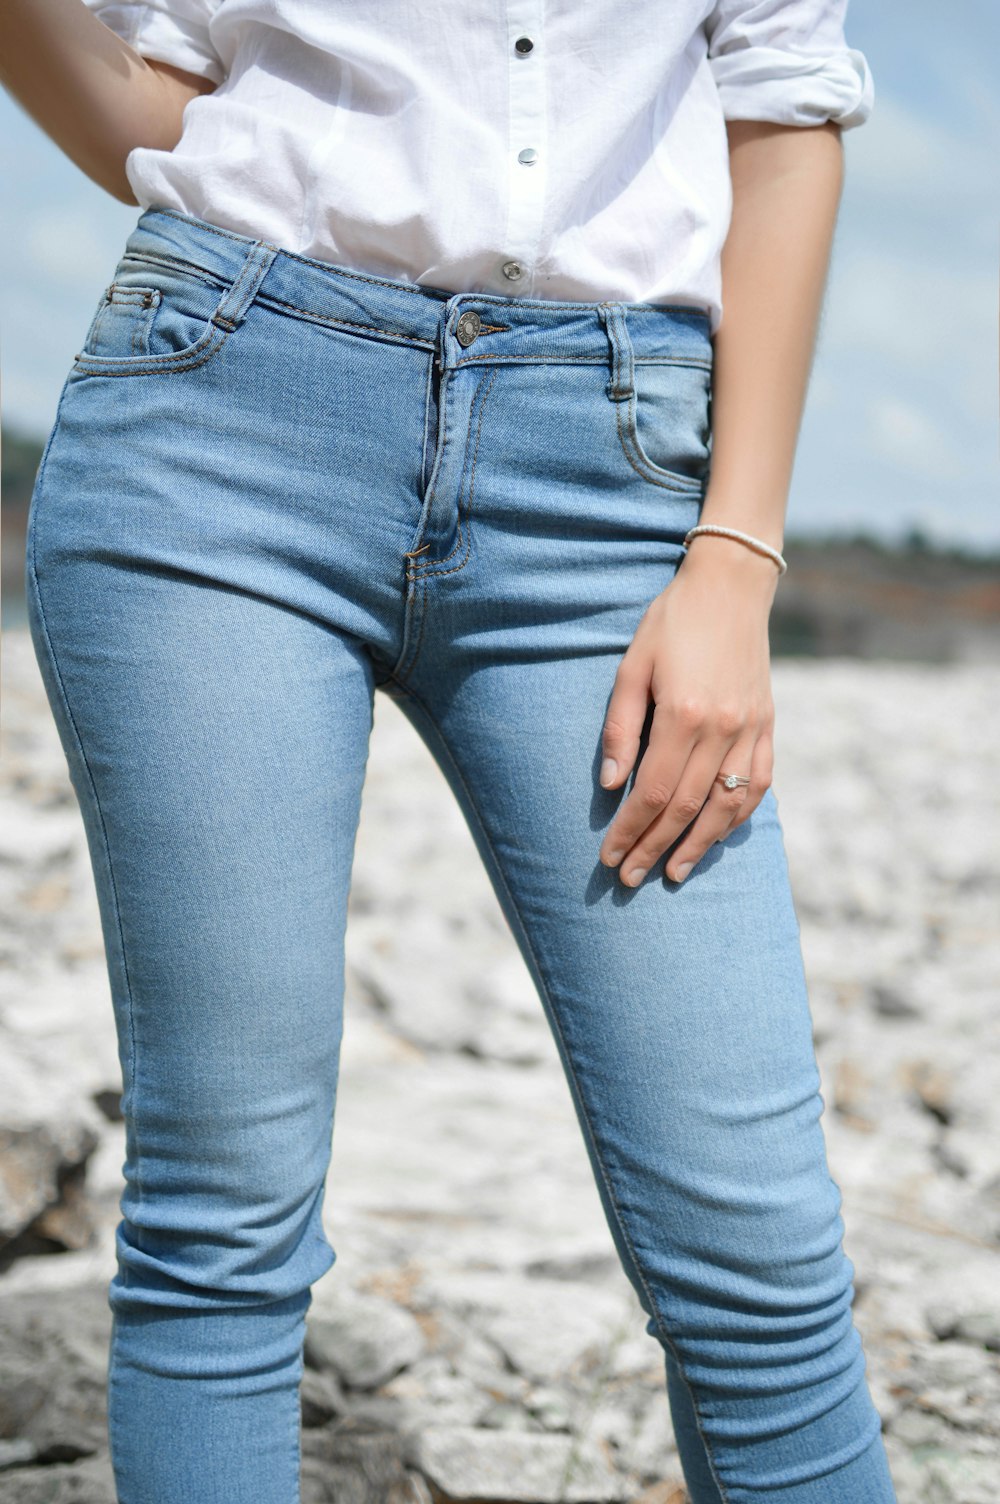 mulher em pé vestindo jeans e top branco